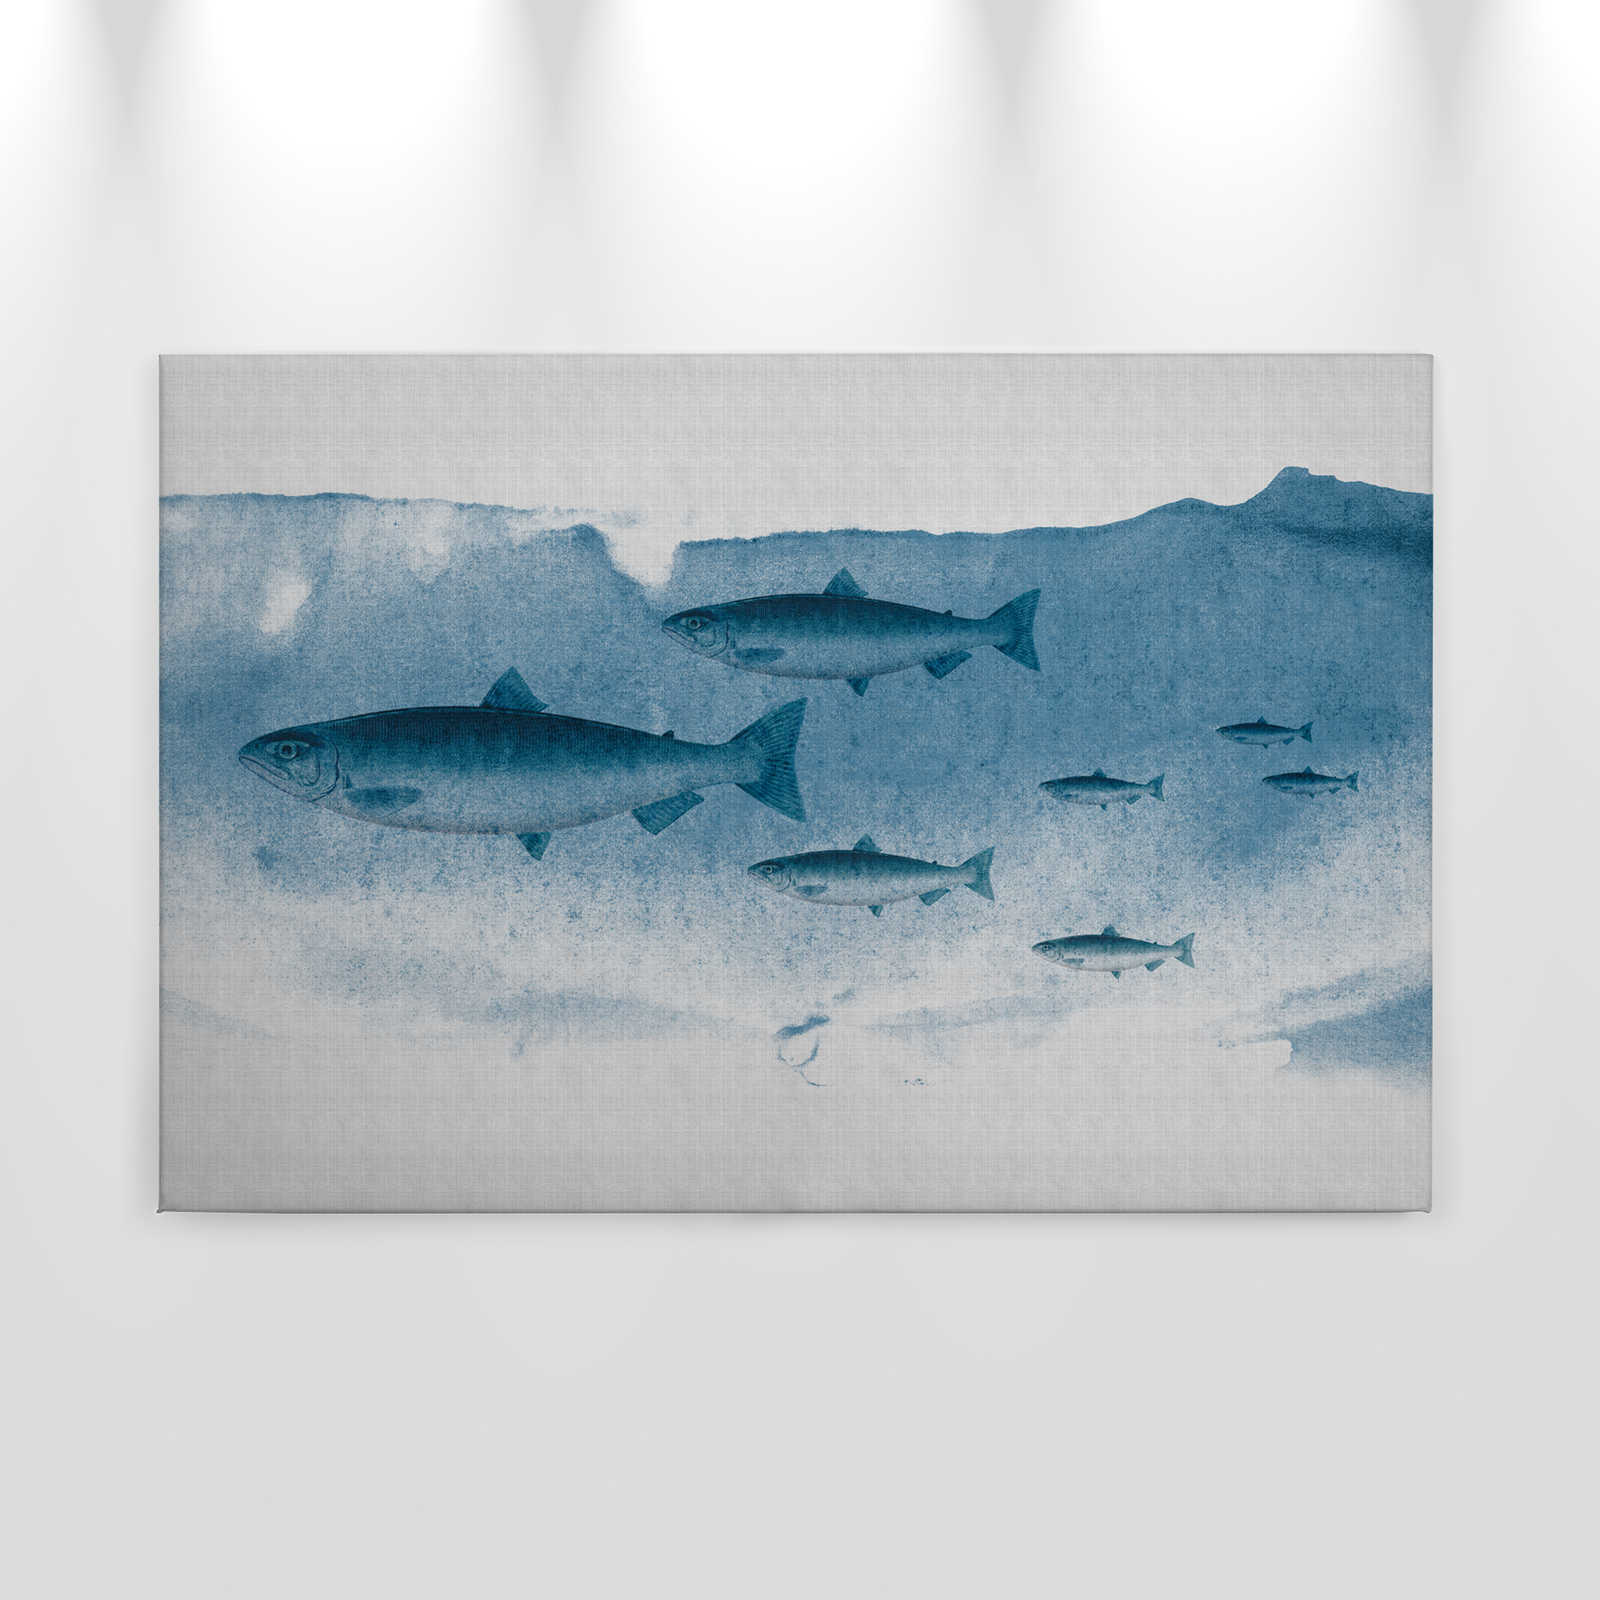             Into the blue 1 - Aquarel vis in blauw als canvas schilderij in natuurlijk linnen structuur - 0.90 m x 0.60 m
        